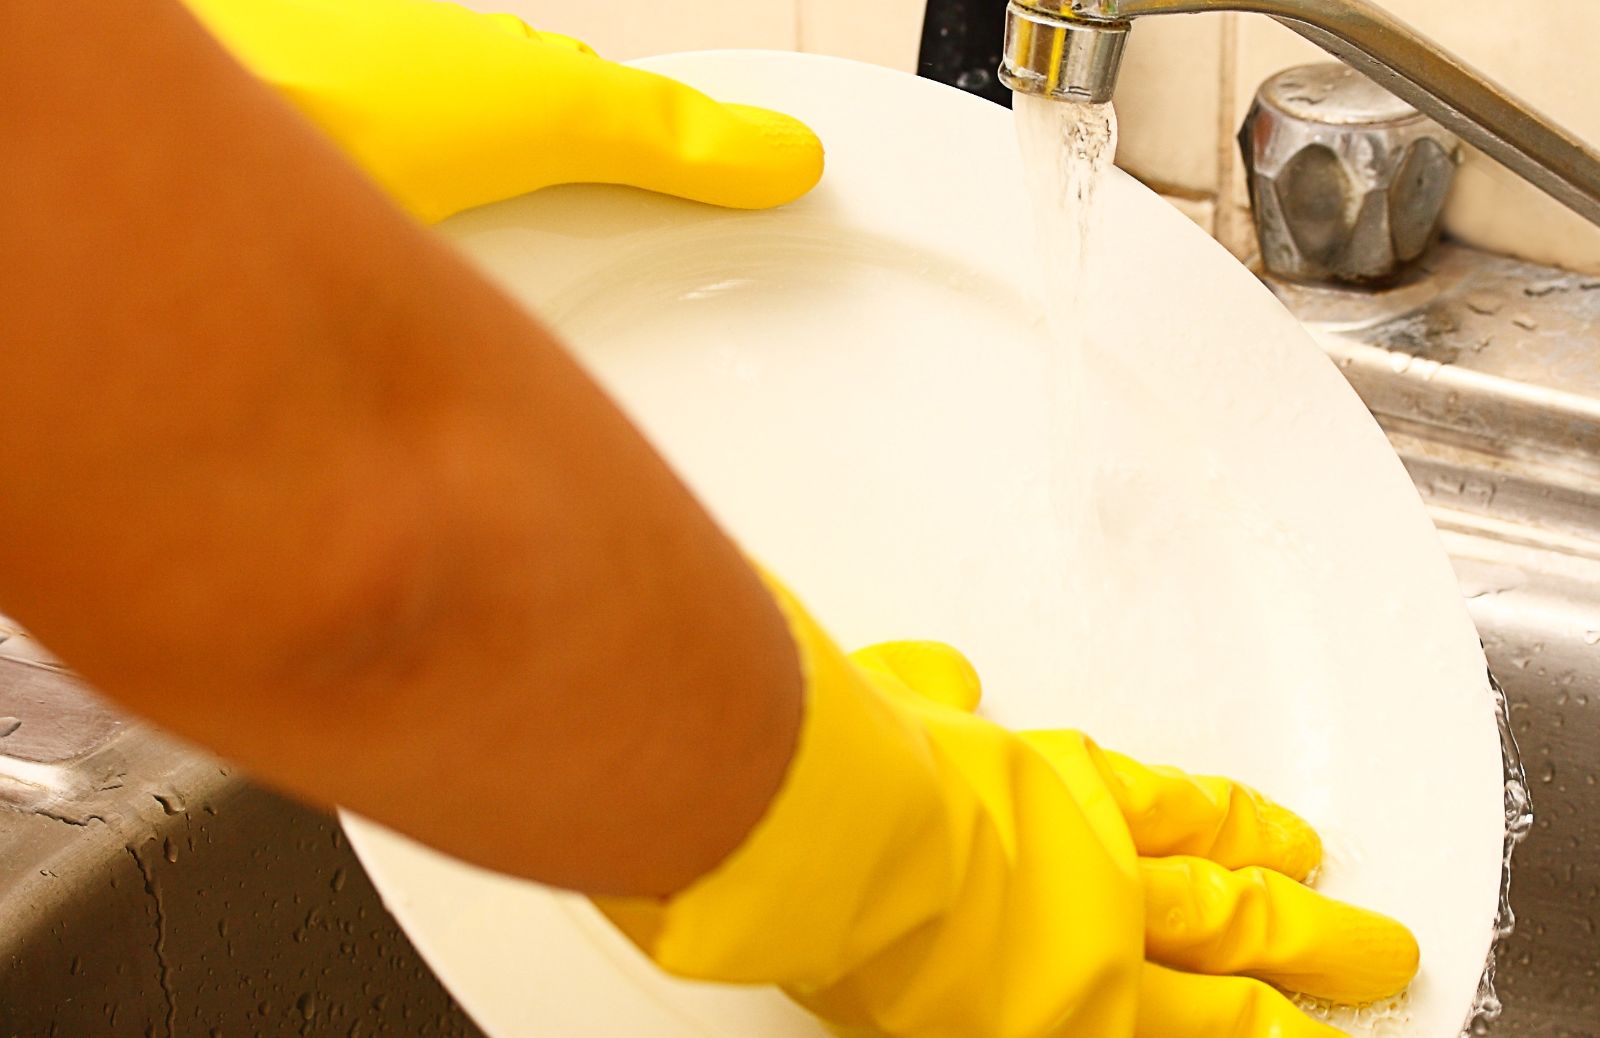 Si consuma più acqua lavando i piatti a mano o con la lavastoviglie?